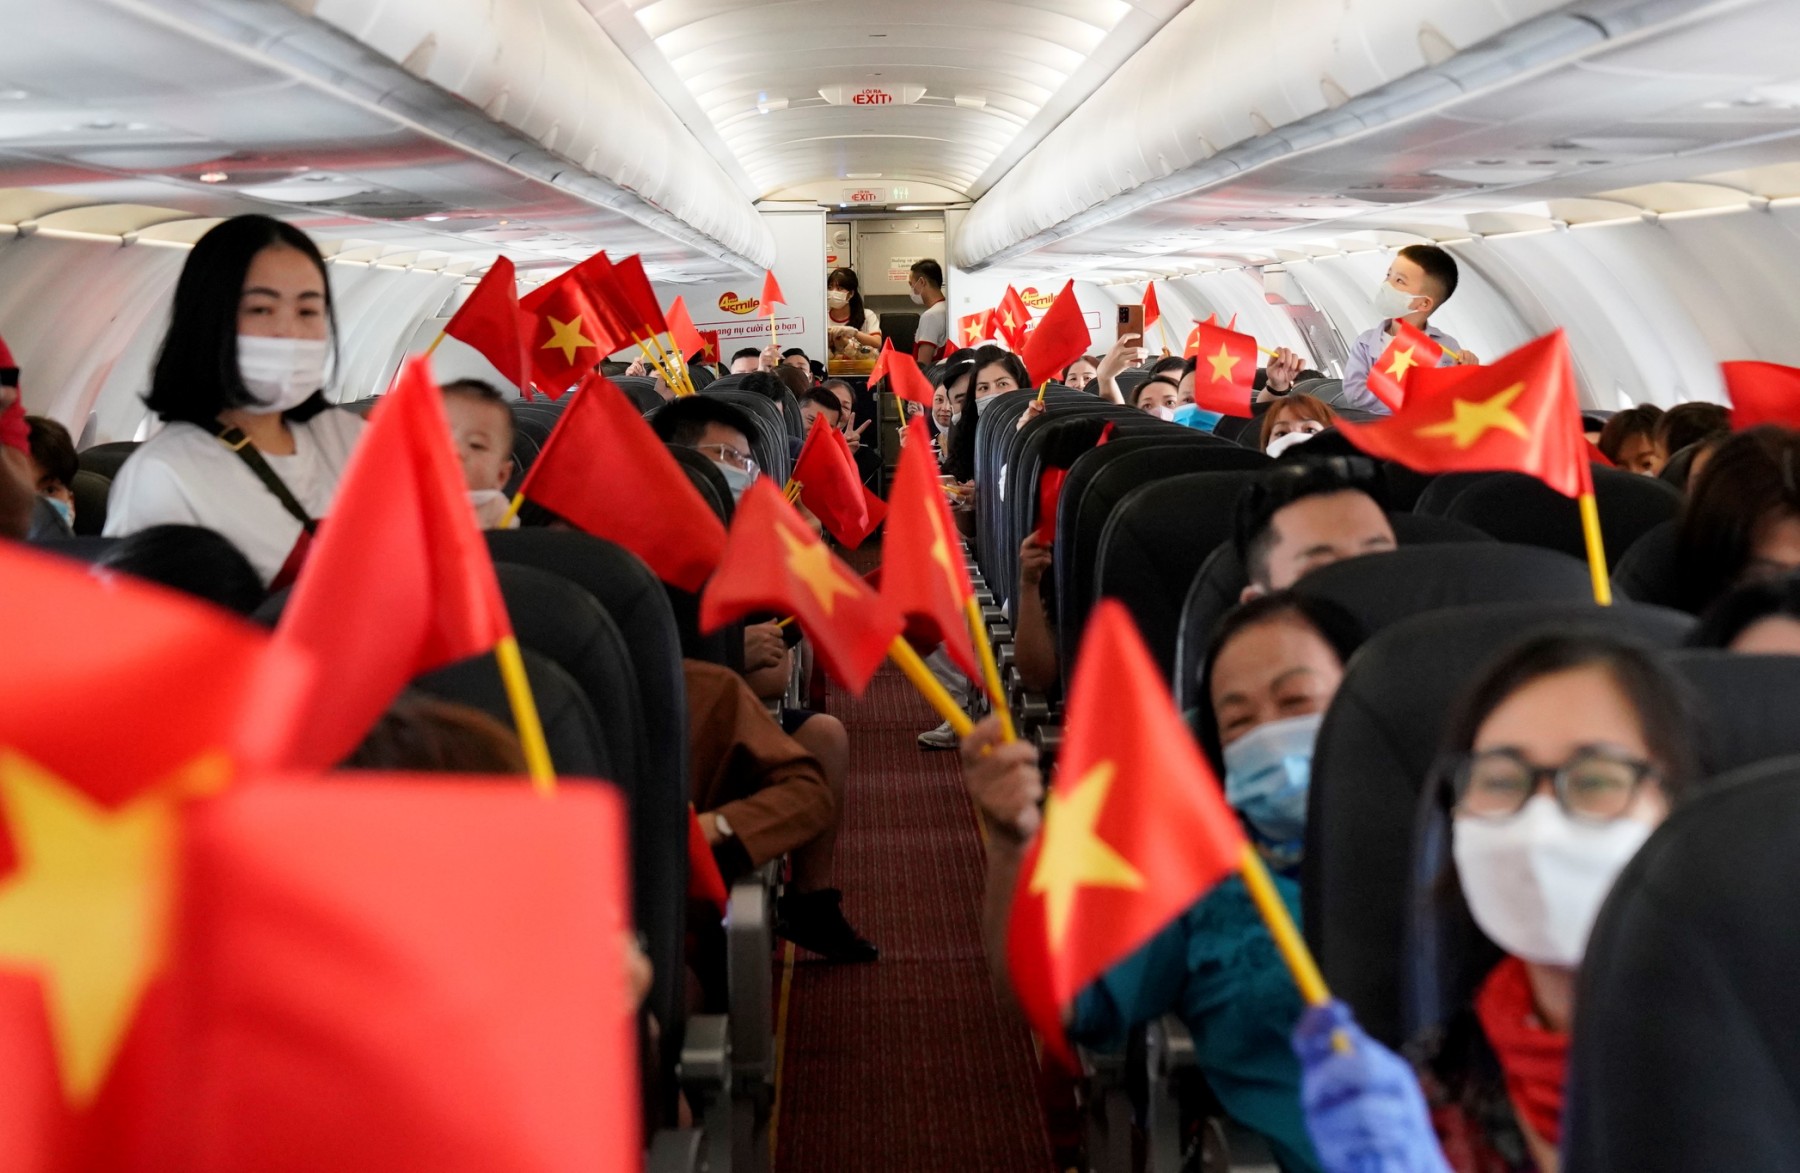 Hàng trăm hành khách trên chuyến bay VJ455 từ thủ đô Hà Nội tới đảo ngọc Phú Quốc đã hòa mình vào không gian âm nhạc và còn nhận được những món quà lưu niệm từ phi hành đoàn Vietjet